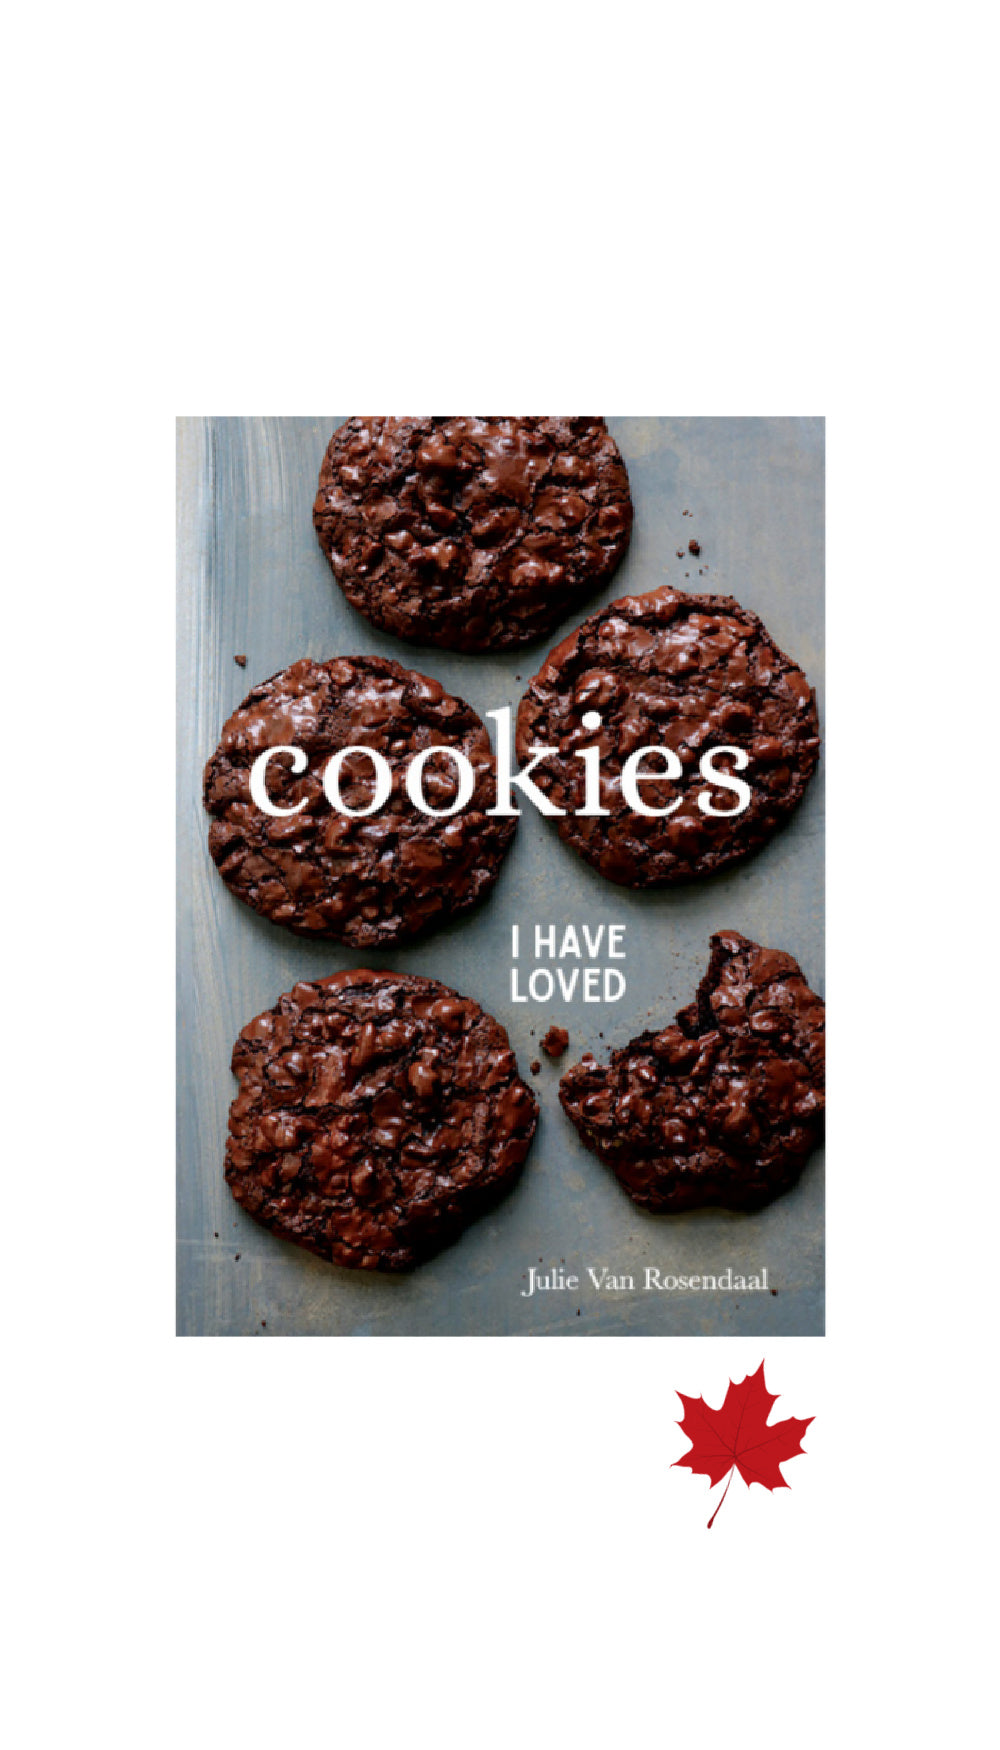 Cookies I Have Loved / JULIE VAN ROSENDAAL